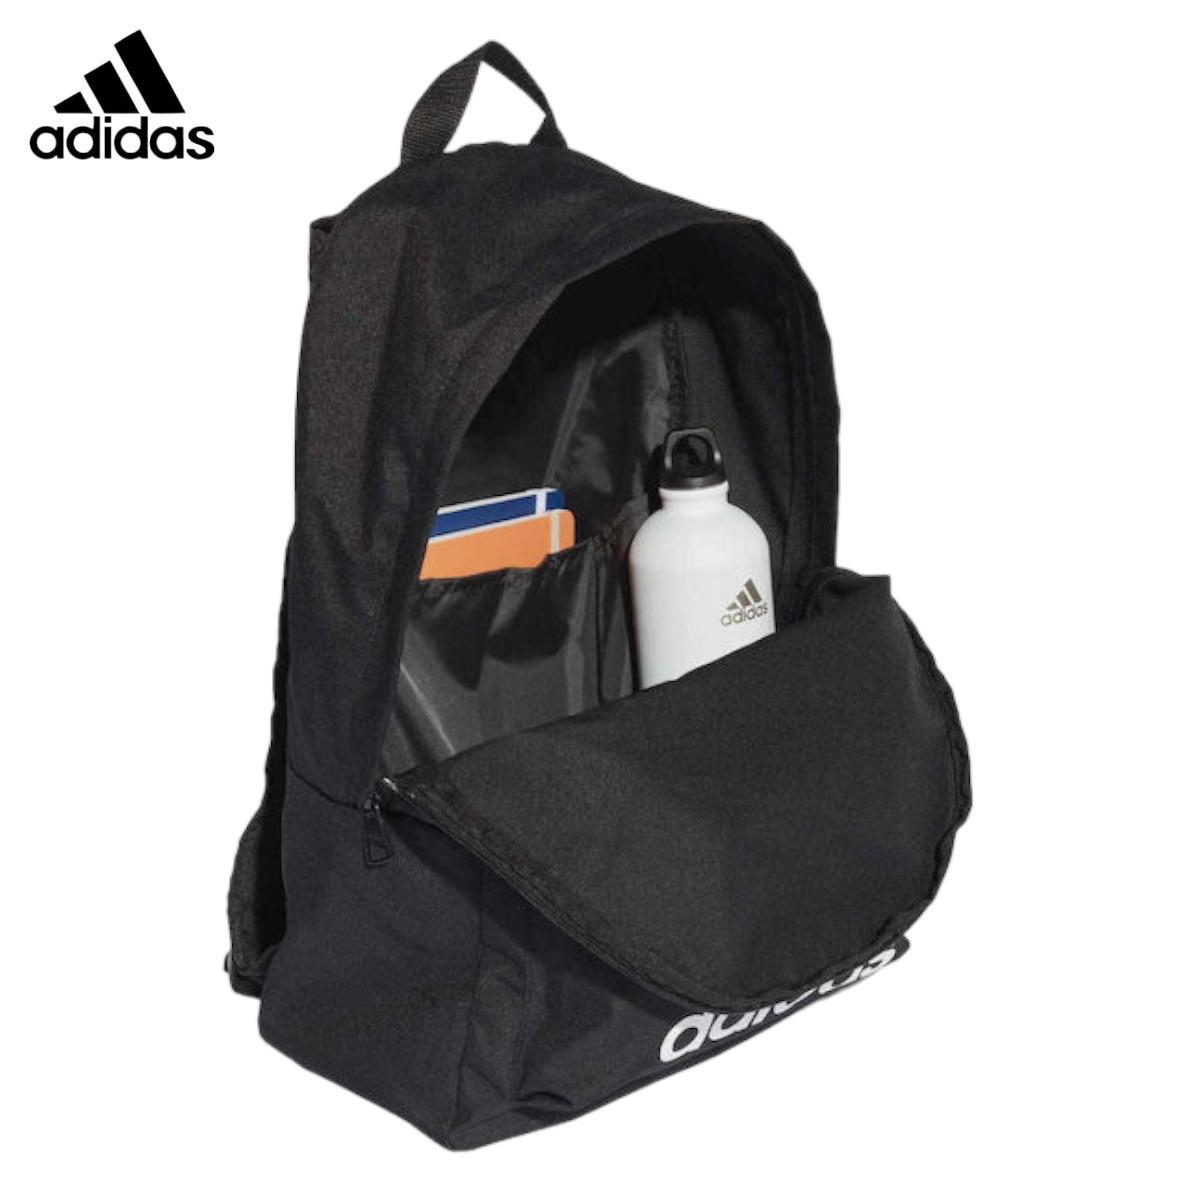 Adidas-UNISEX-classic-BackPack-Extra-Large-FL3716-8.jpg